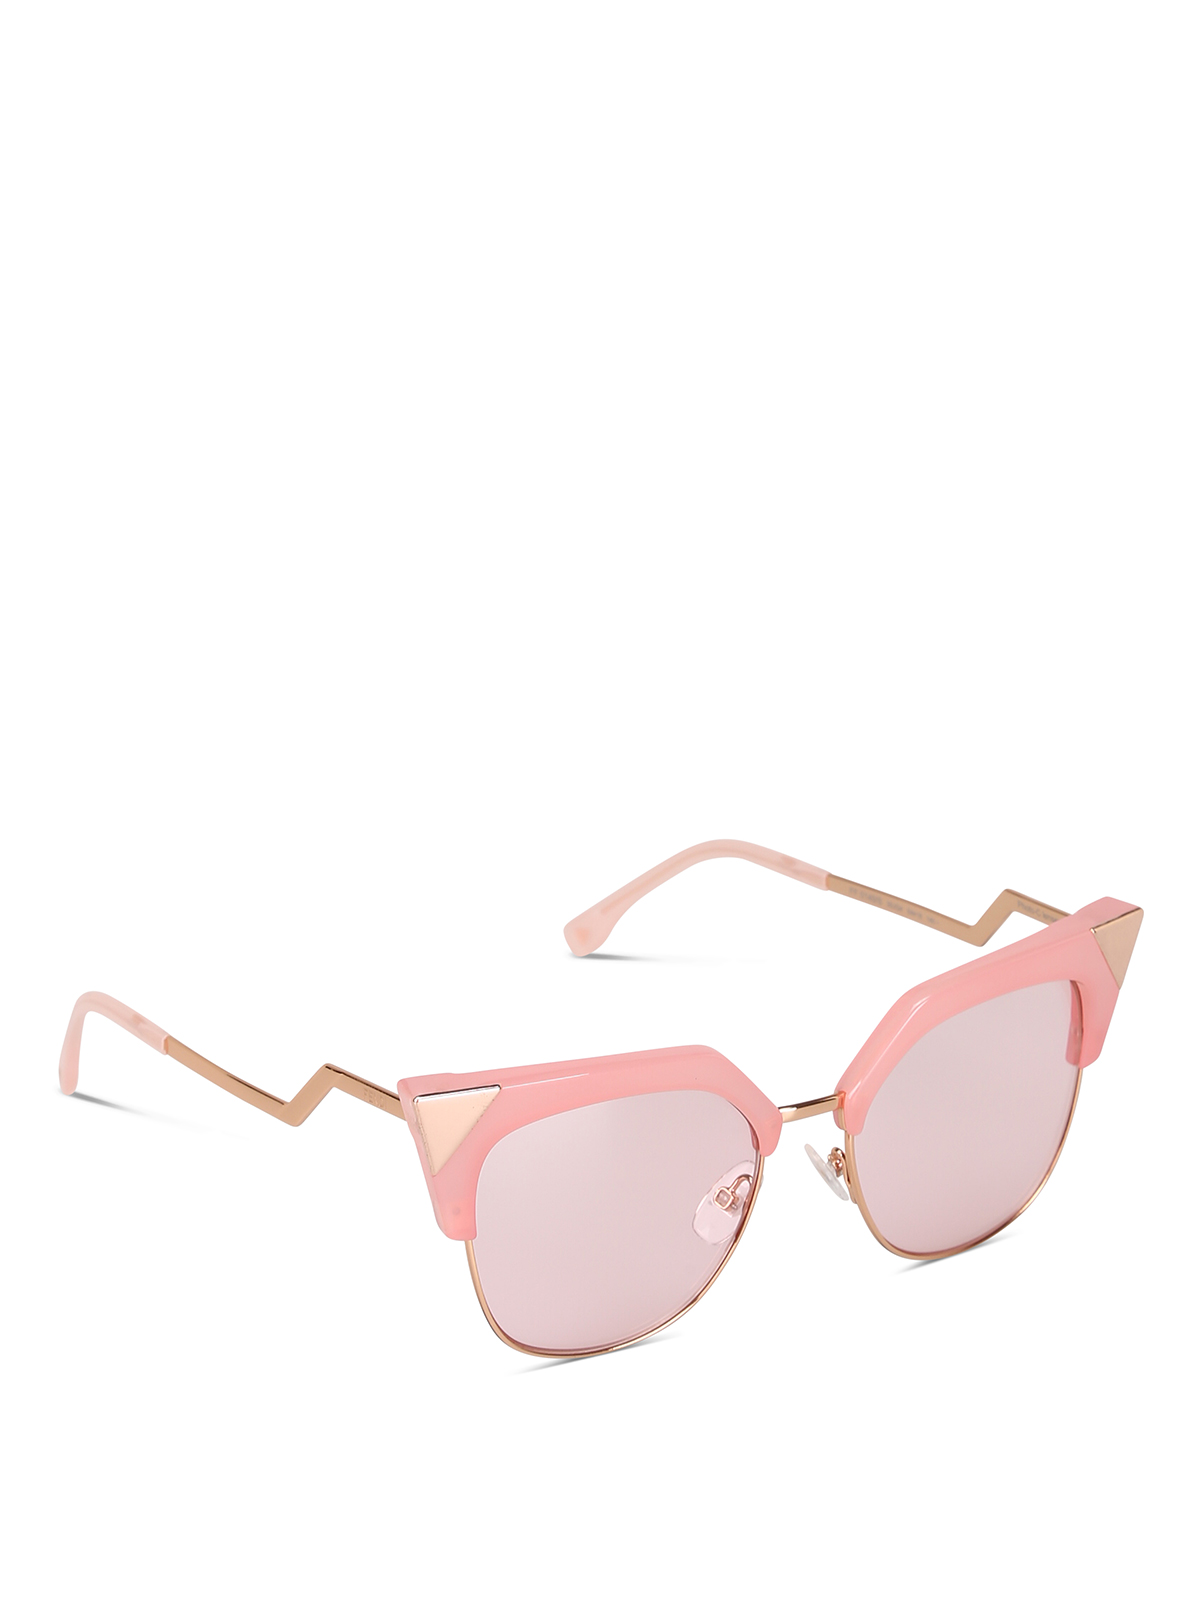 Fendi - Pink cat-eye sunglasses - عینک 